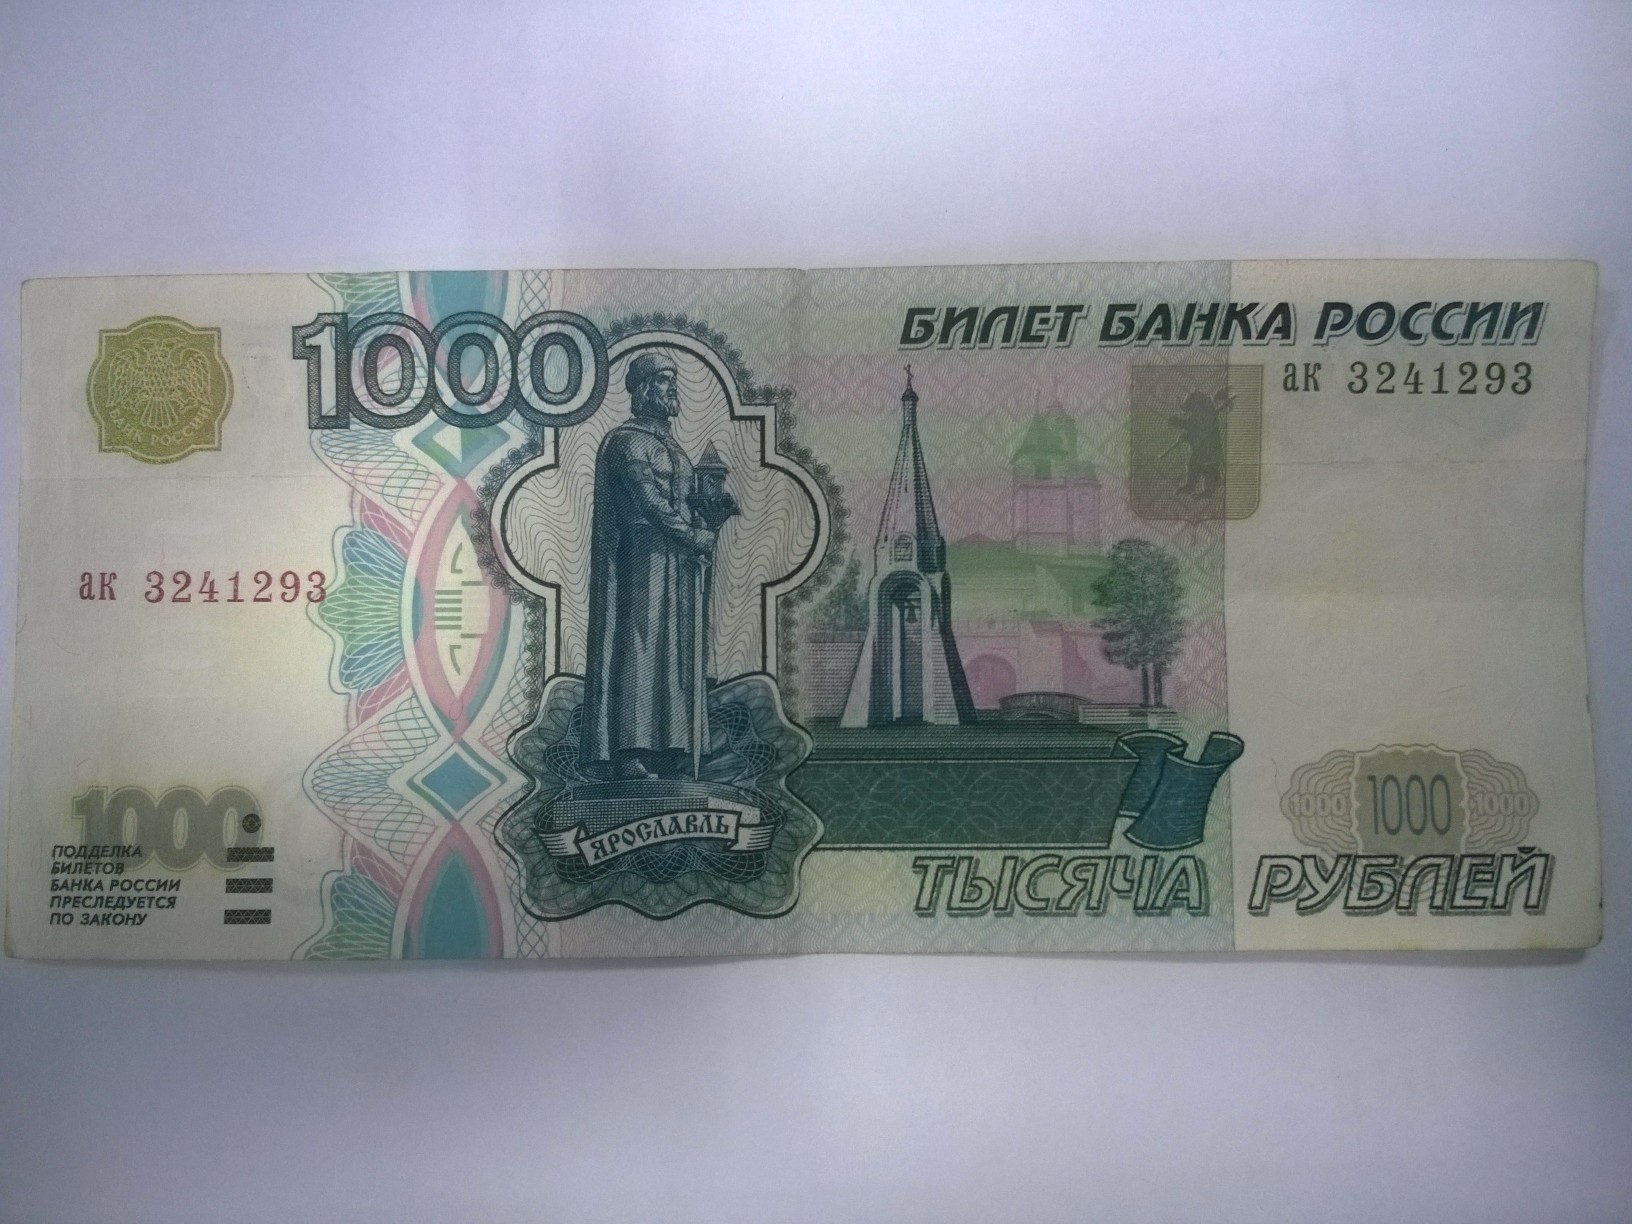 Го 1000 рублей. Тысячная купюра 1997 года. Купюра 1000 рублей. Банкнота 1000 рублей. 1000 Рублевые купюры 1997 года.